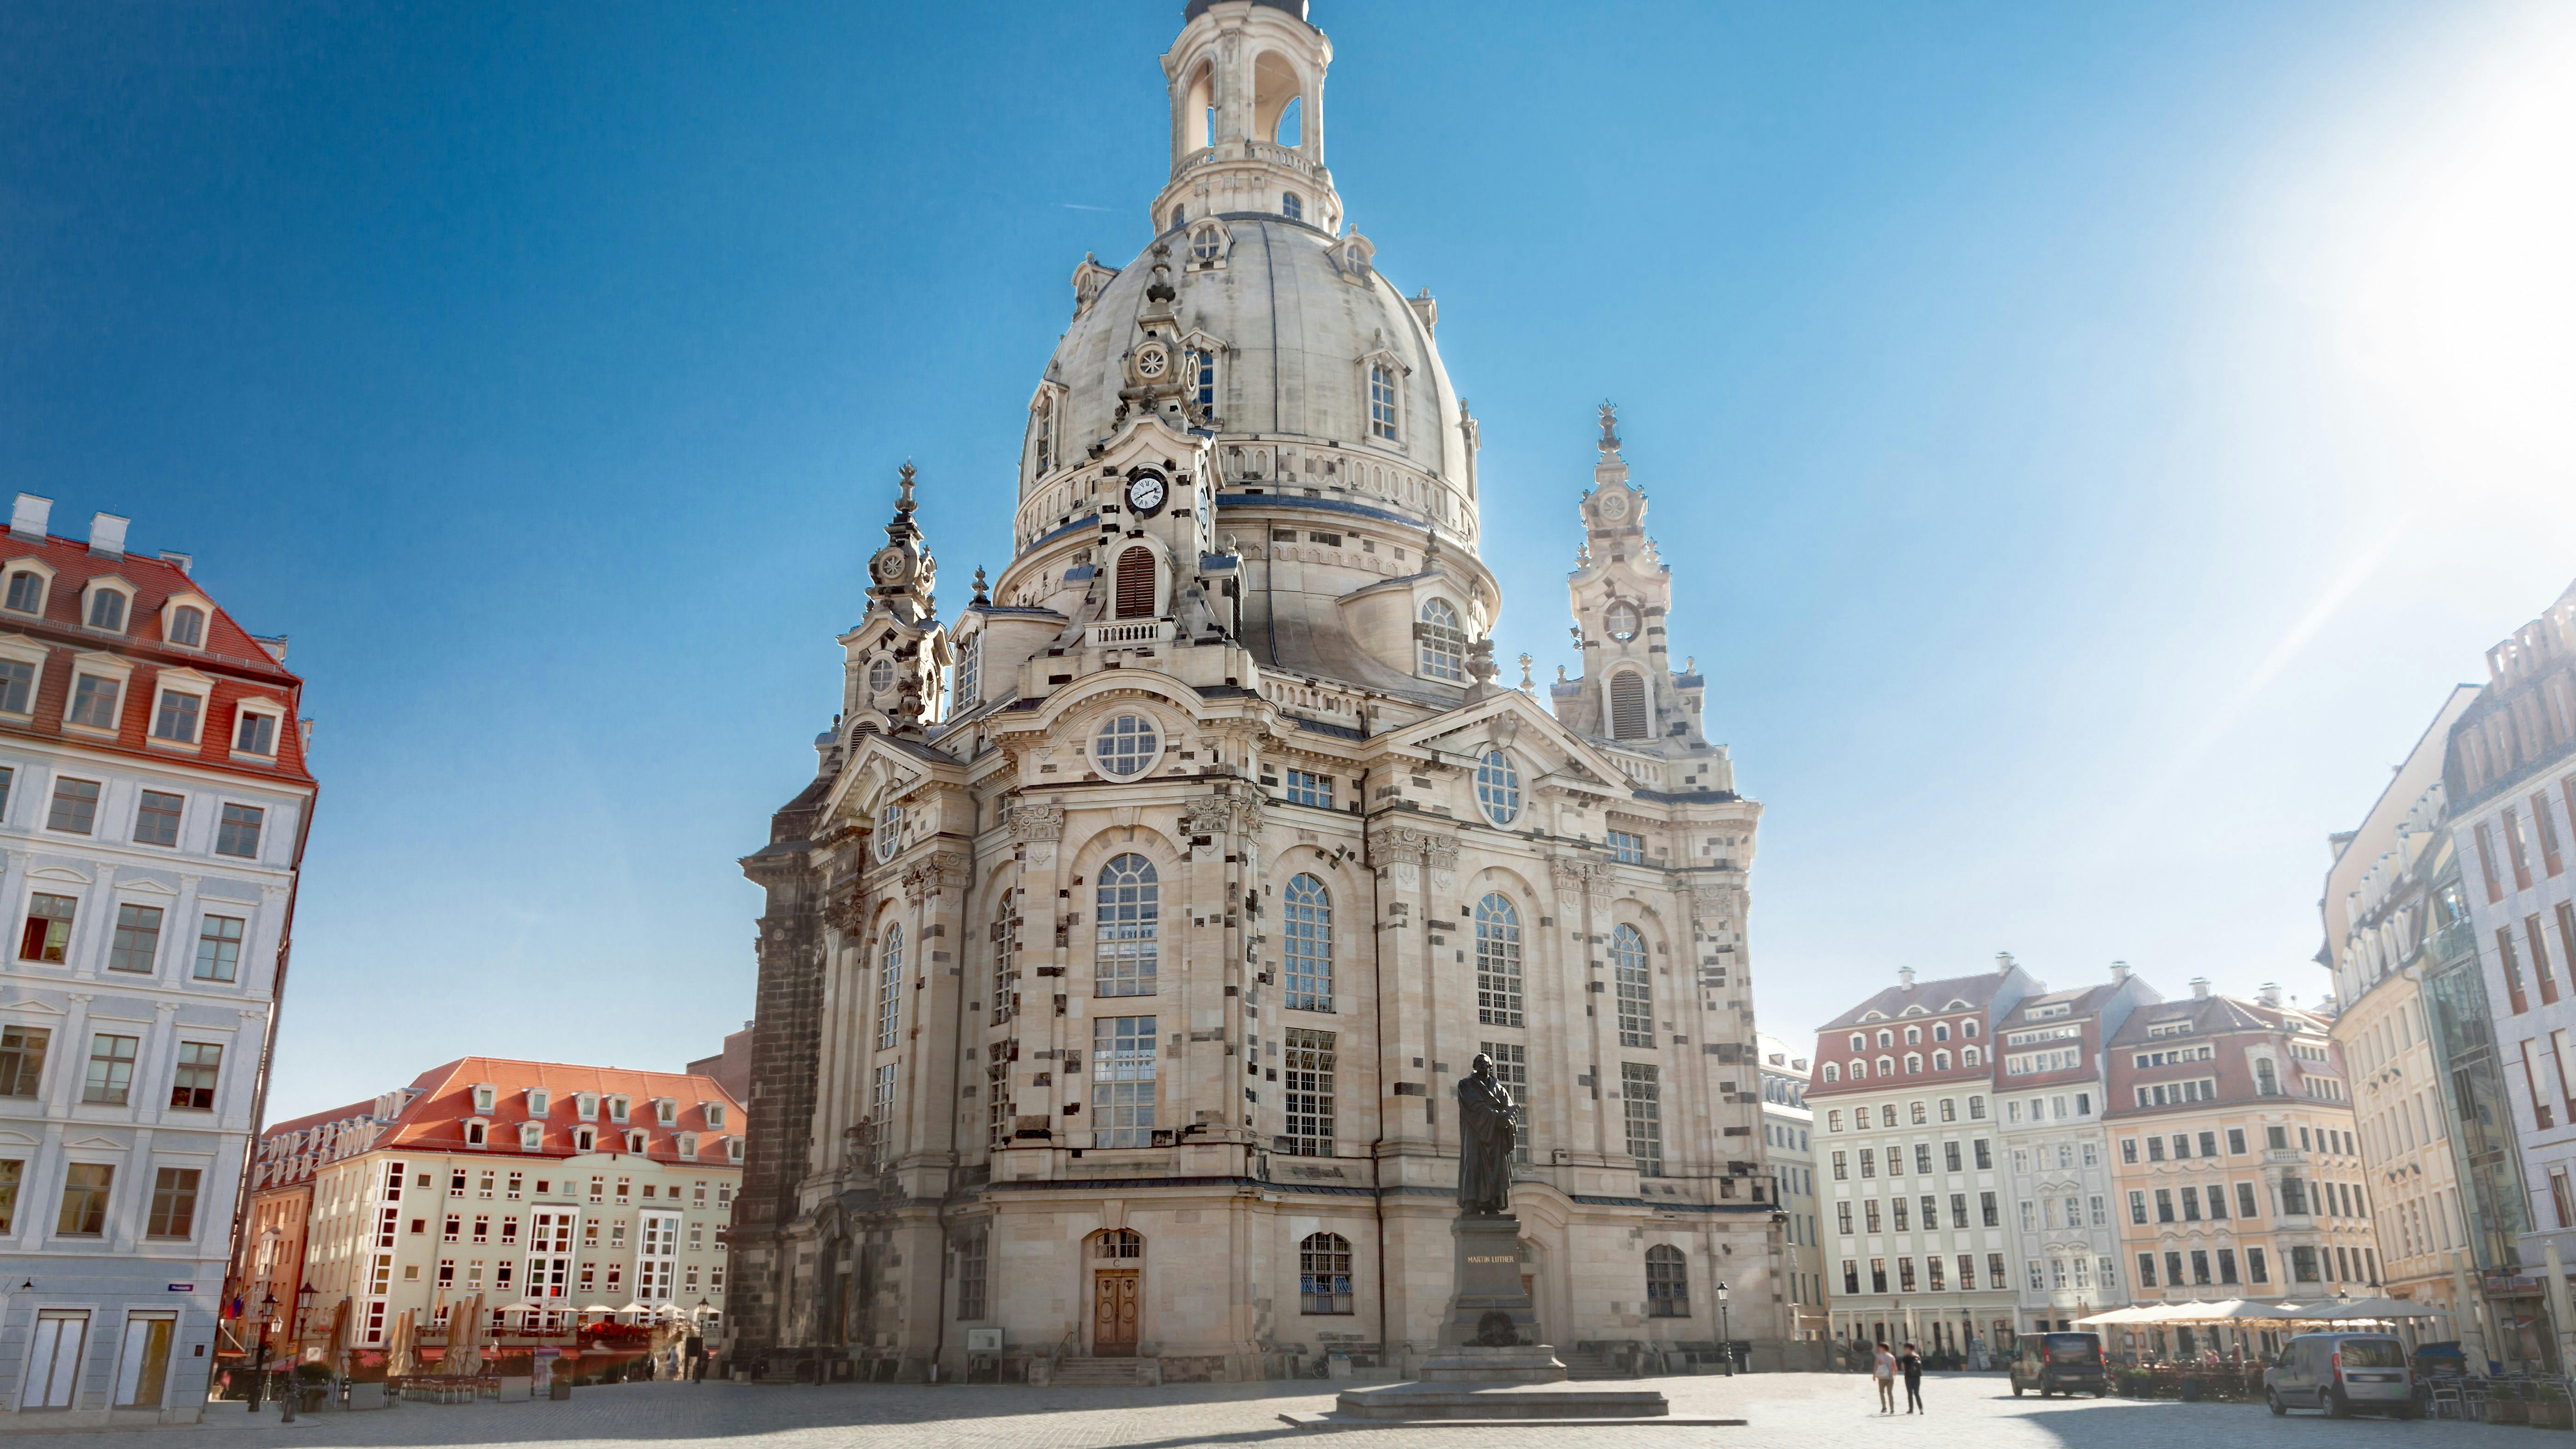 Wycieczka po Dreźnie z wizytą po wnętrzu Frauenkirche i Zwinger tour